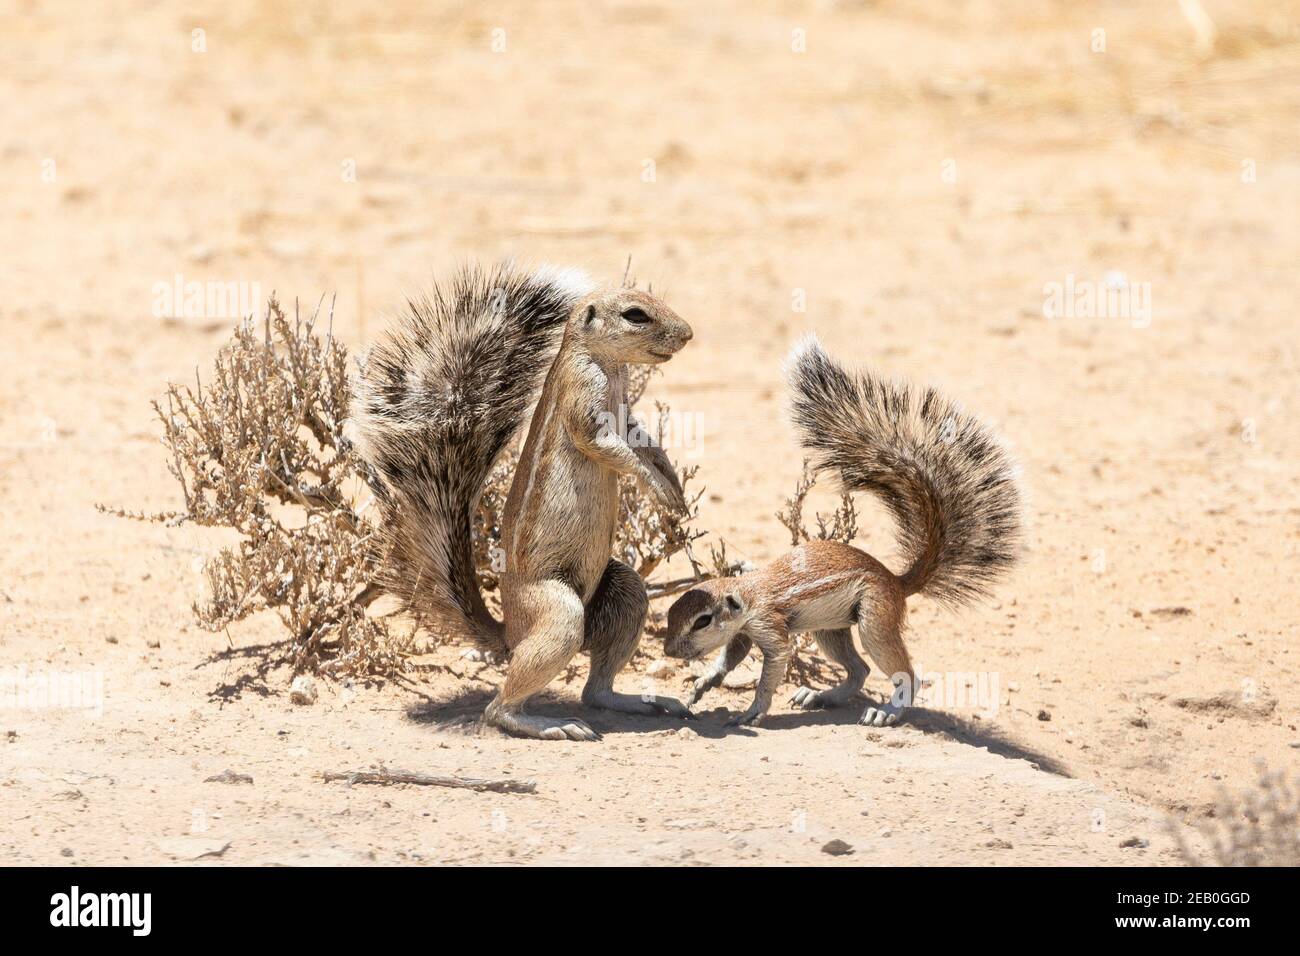 Cape / South African Ground Squirrel (Xerus inauris) adulte avec bébé au parc transfrontalier Kgalagadi Burrow, Kalahari, Cap Nord, Afrique du Sud Banque D'Images